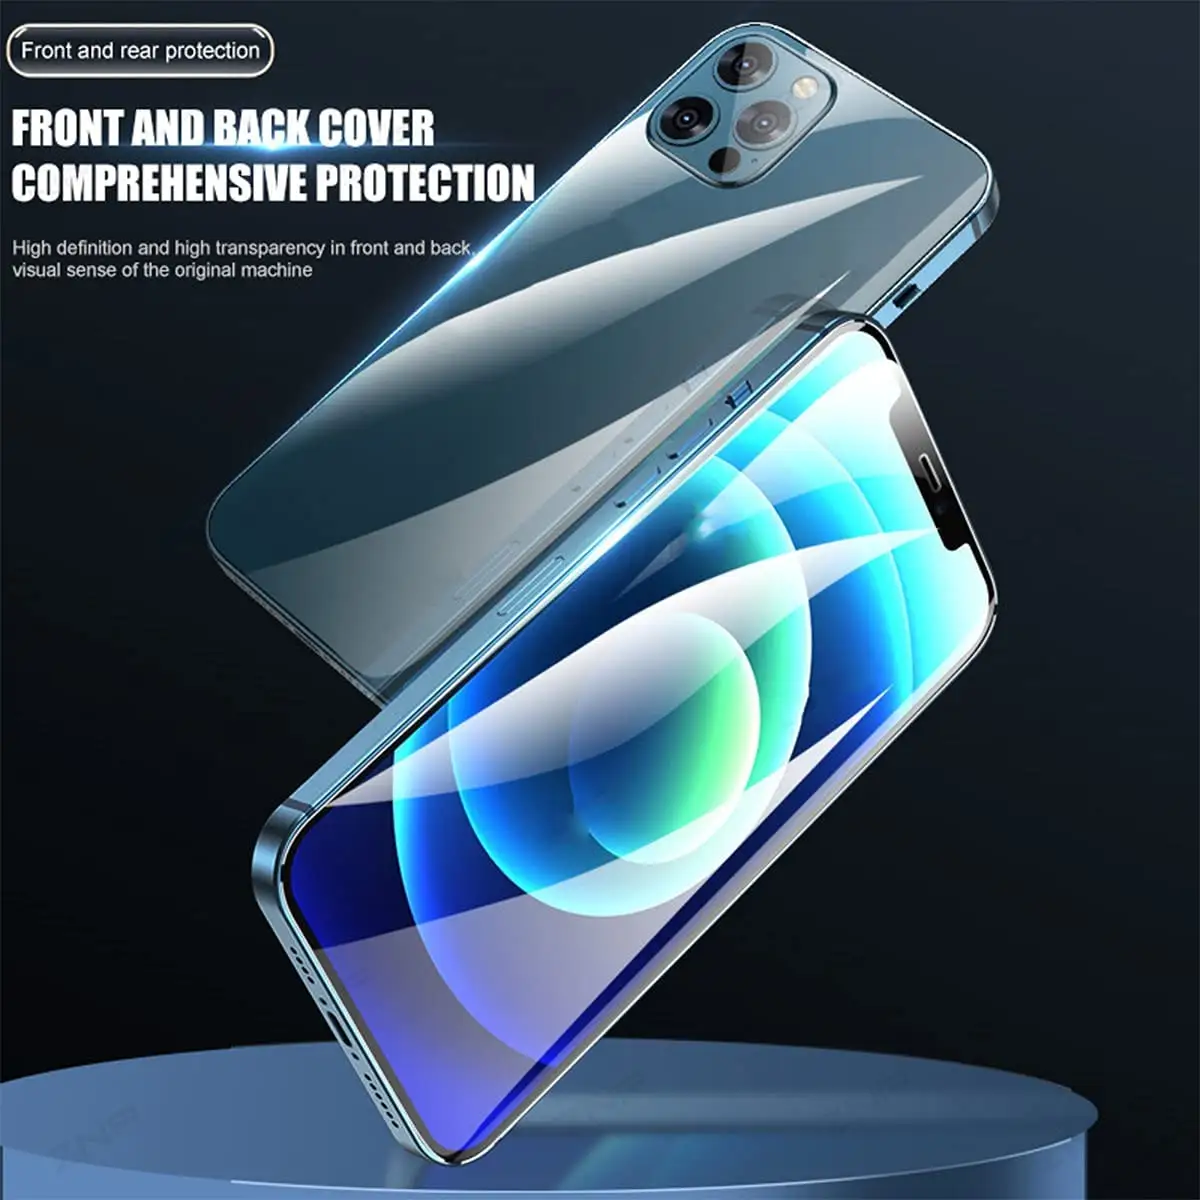 Hydrogelfolie Bildschirmschutz Front- und Rückenabdeckung Anti-Blasen-HD-Klarfolie für iPhone